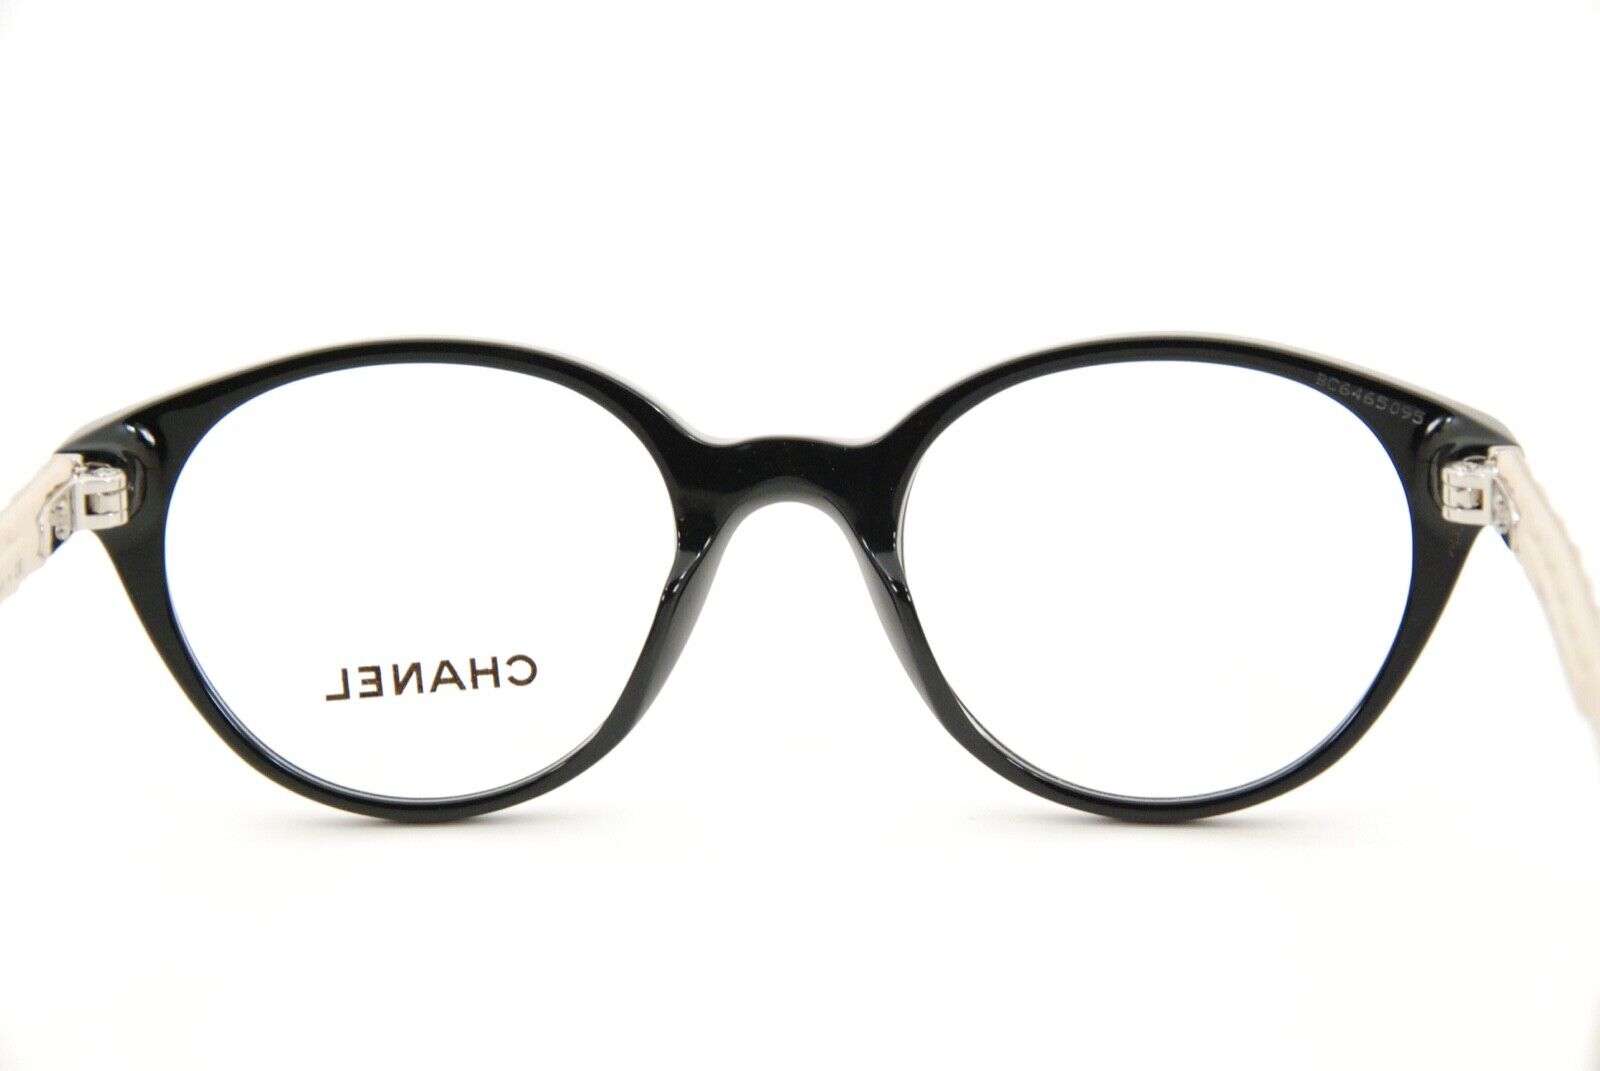 Rare Authentic Chanel 3289-Q c.817 Black/Beige 47mm Glasses Frames RX-able